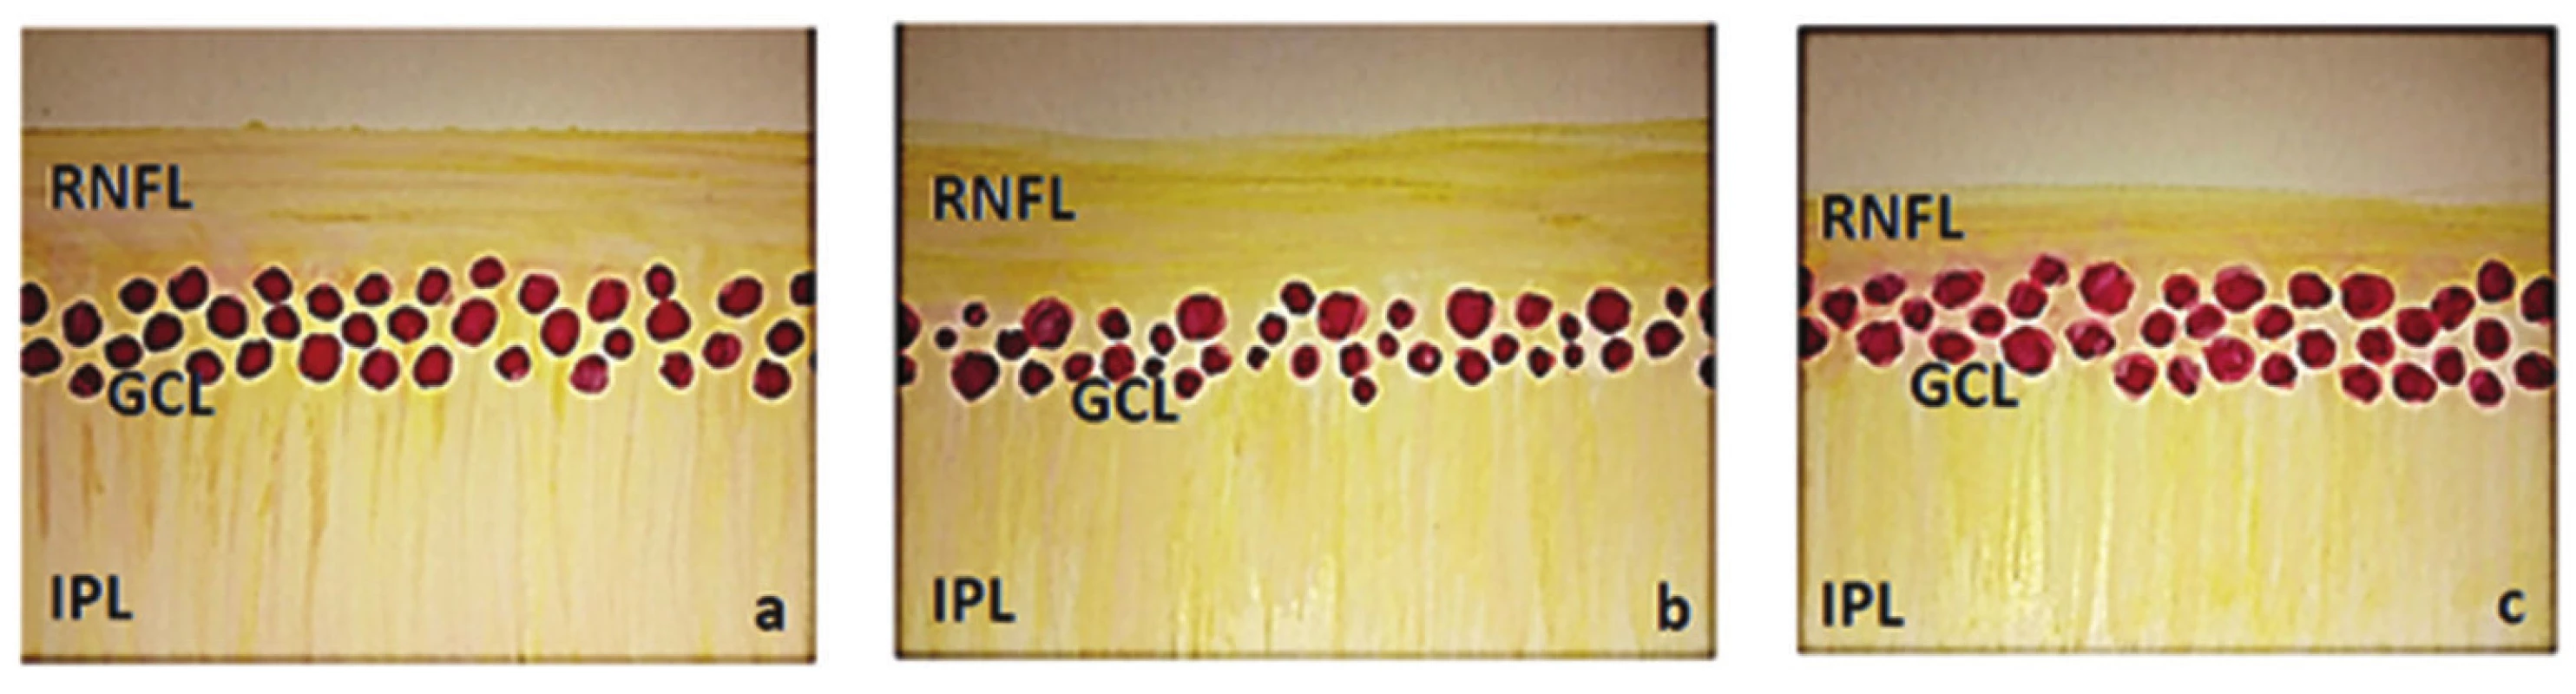 Schematické zobrazení vnitřních vrstev sítnice, (RNFL – vrstva nervových vláken, GCL – vrstva gangliových buněk a IPL – vnitřní plexiformní vrstva)
a) normální nález, b) nález u HTG – snížení vrstvy GCL a nepatrně i RNFL, c) nález u NTG – snížení RNFL a nepatrně i GCL